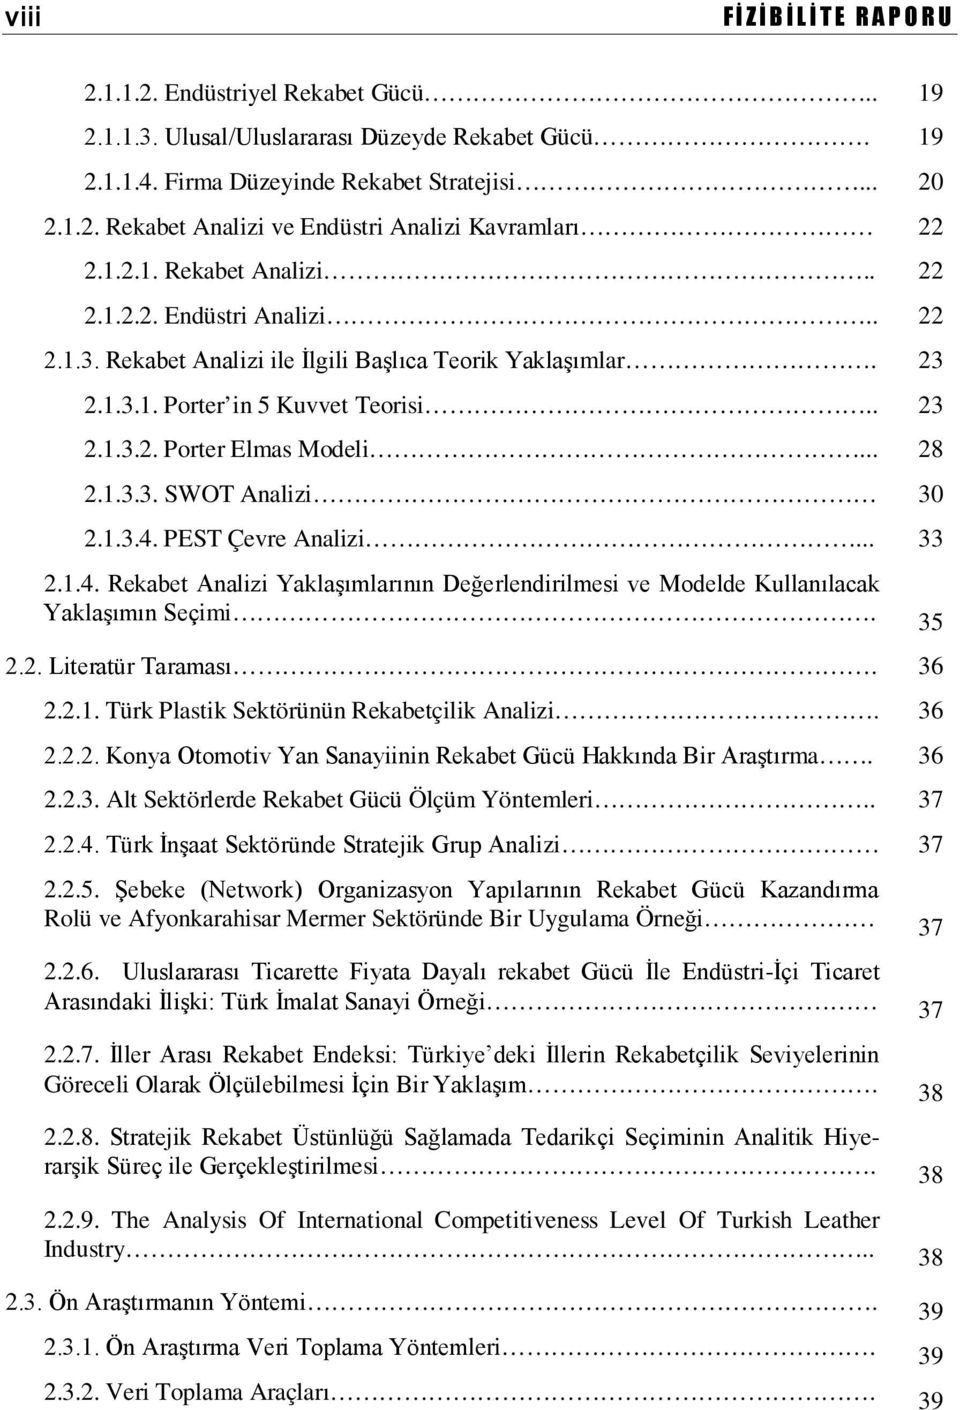 1.3.3. SWOT Analizi 30 2.1.3.4. PEST Çevre Analizi... 33 2.1.4. Rekabet Analizi Yaklaşımlarının Değerlendirilmesi ve Modelde Kullanılacak Yaklaşımın Seçimi. 35 2.2. Literatür Taraması. 36 2.2.1. Türk Plastik Sektörünün Rekabetçilik Analizi.